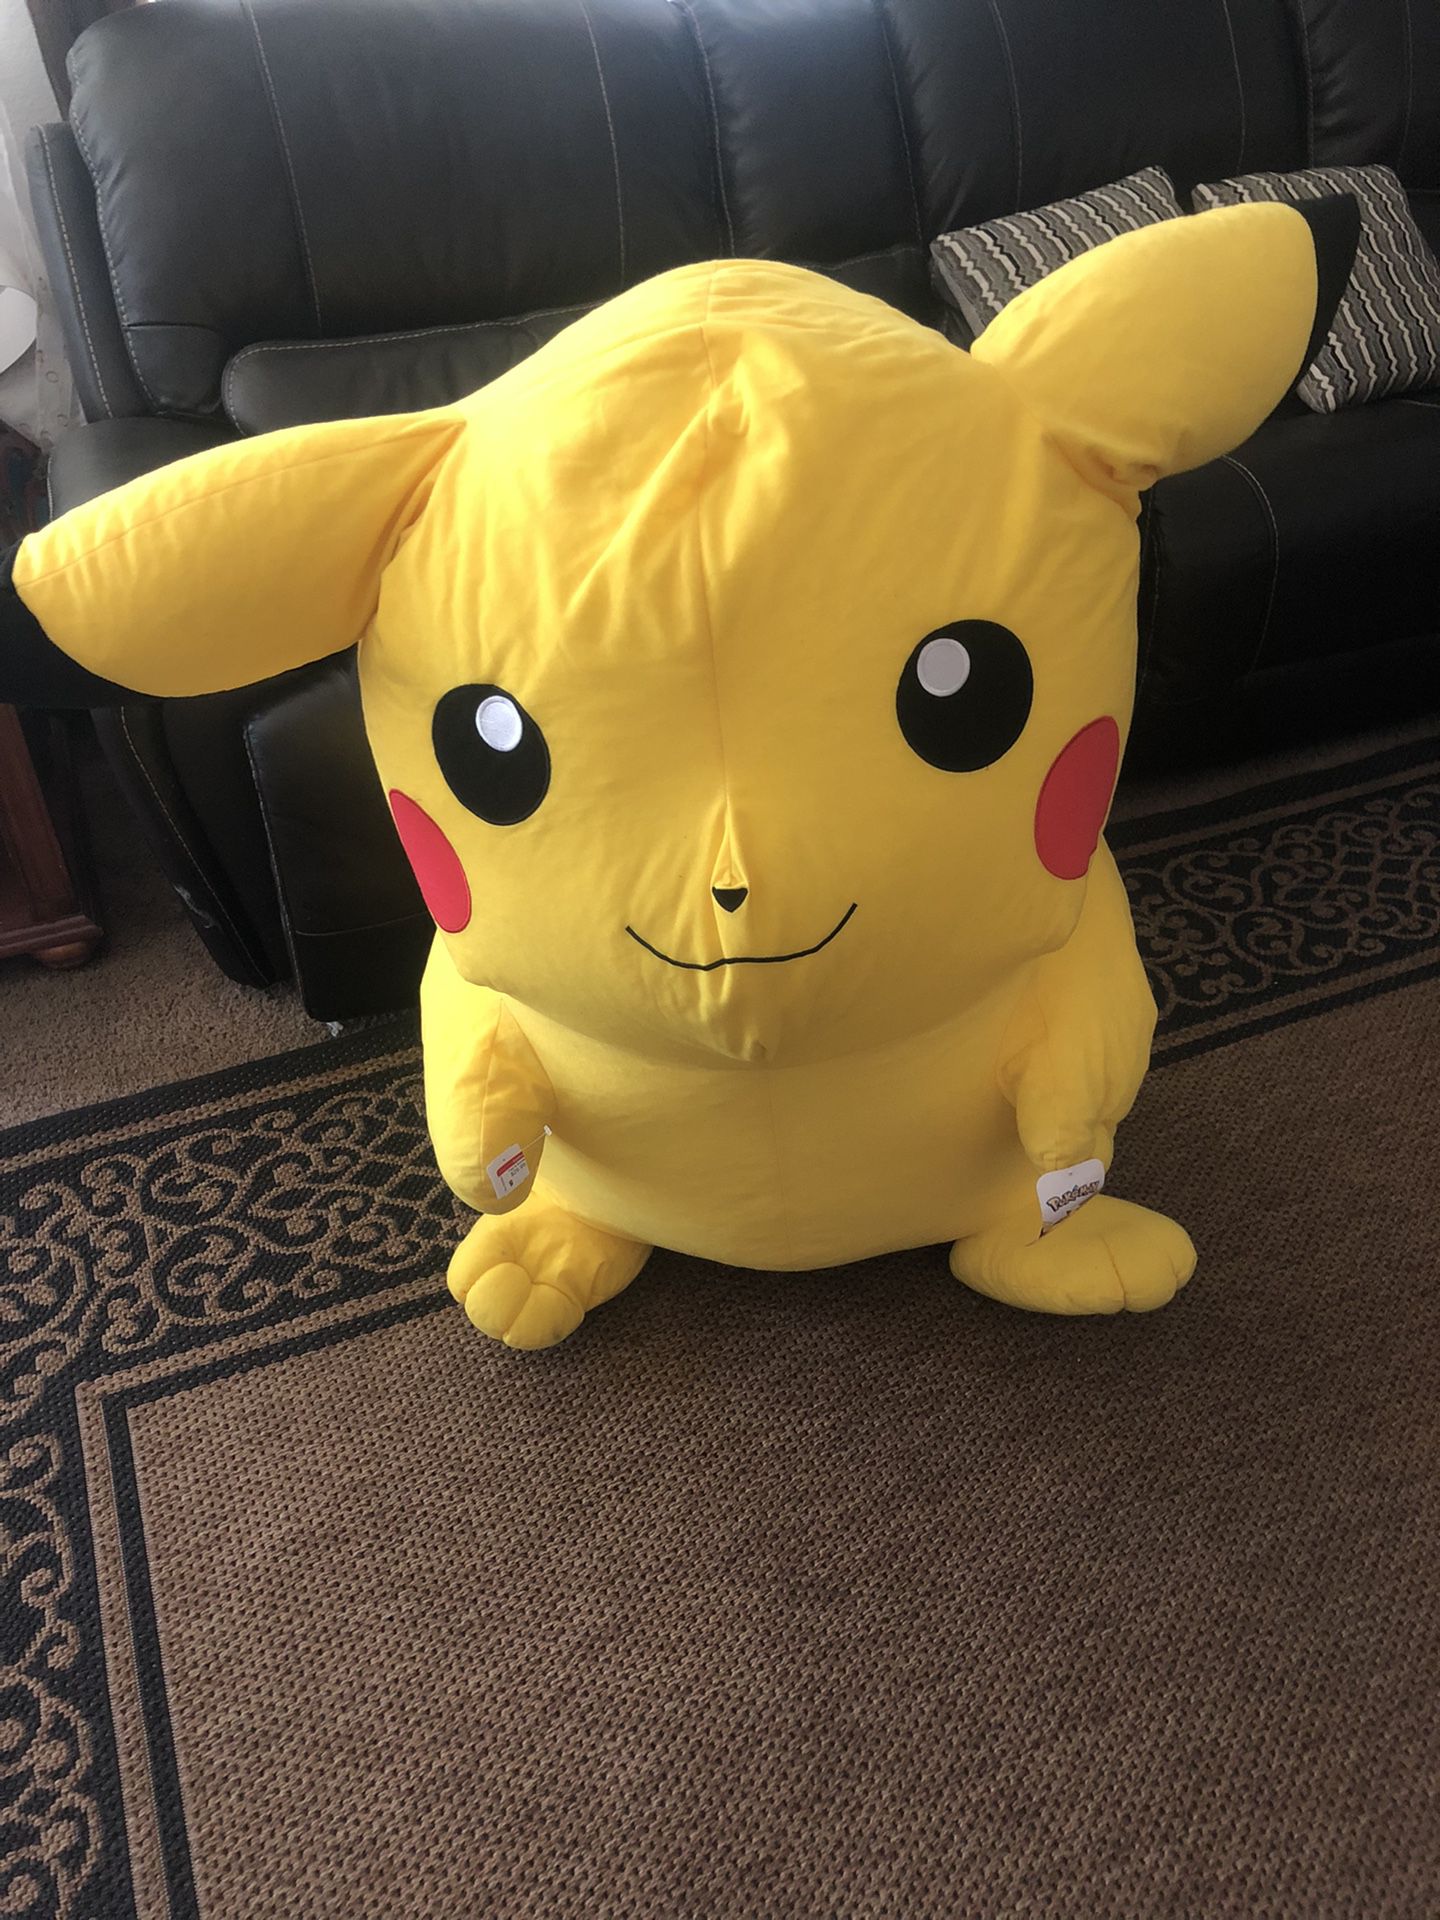 New Giant Pokémon Pikachu Plush Toy Factory 45" GENUINE AUTHENTIC W/ Tags